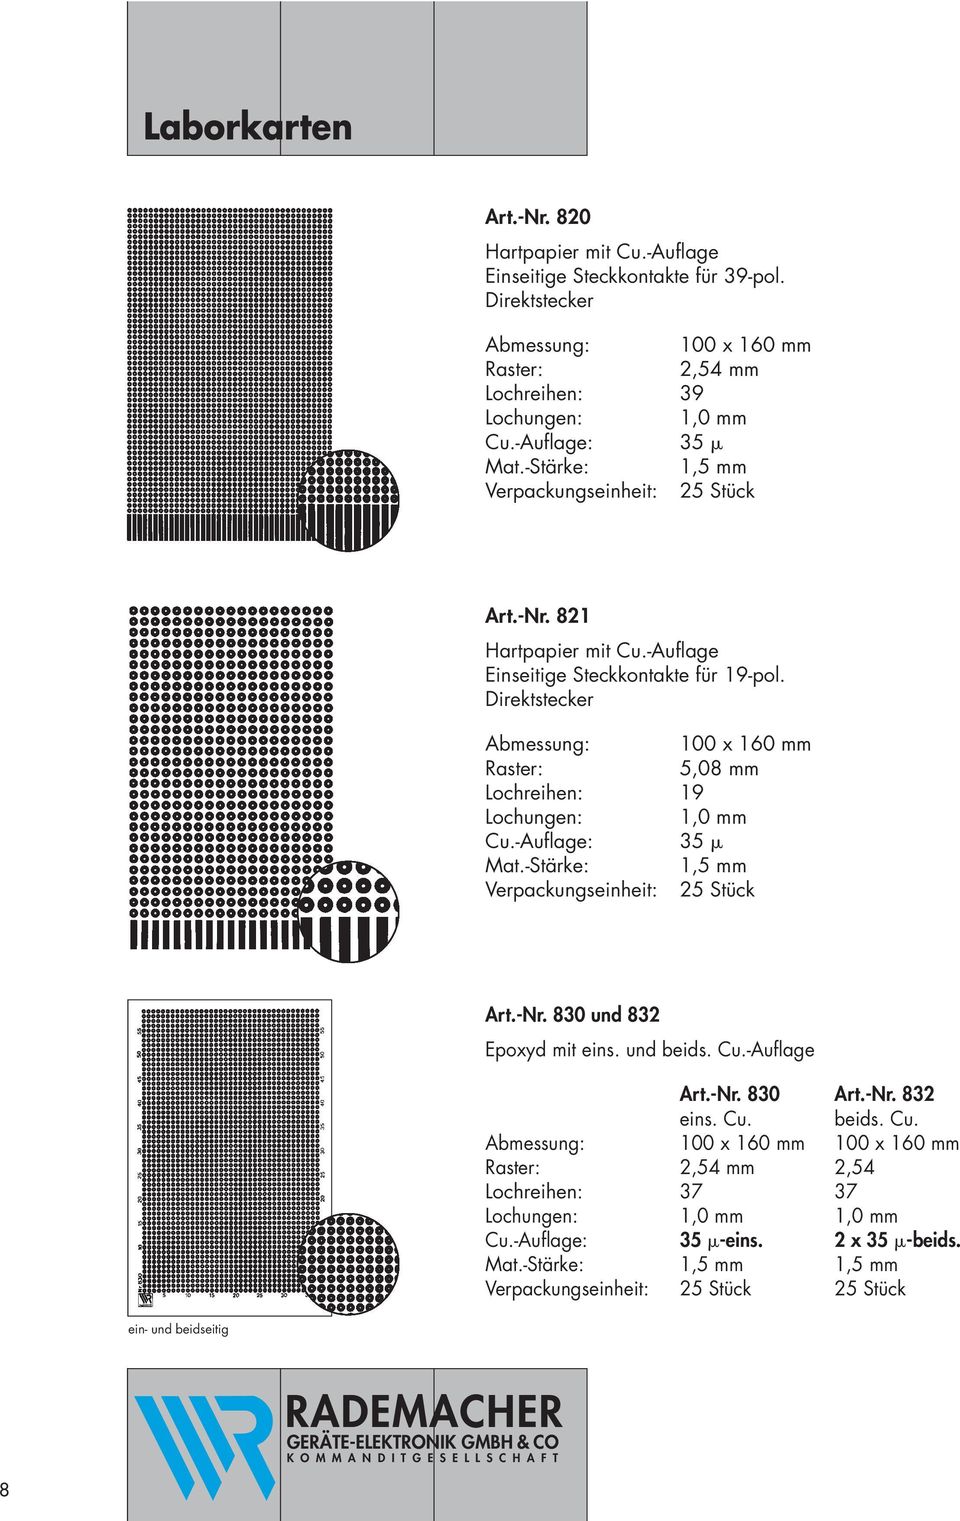 Direktstecker 5,08 mm Lochreihen: 19 Art.-Nr. 830 und 832 Epoxyd mit eins. und beids. Cu.-Auflage Art.-Nr. 830 Art.